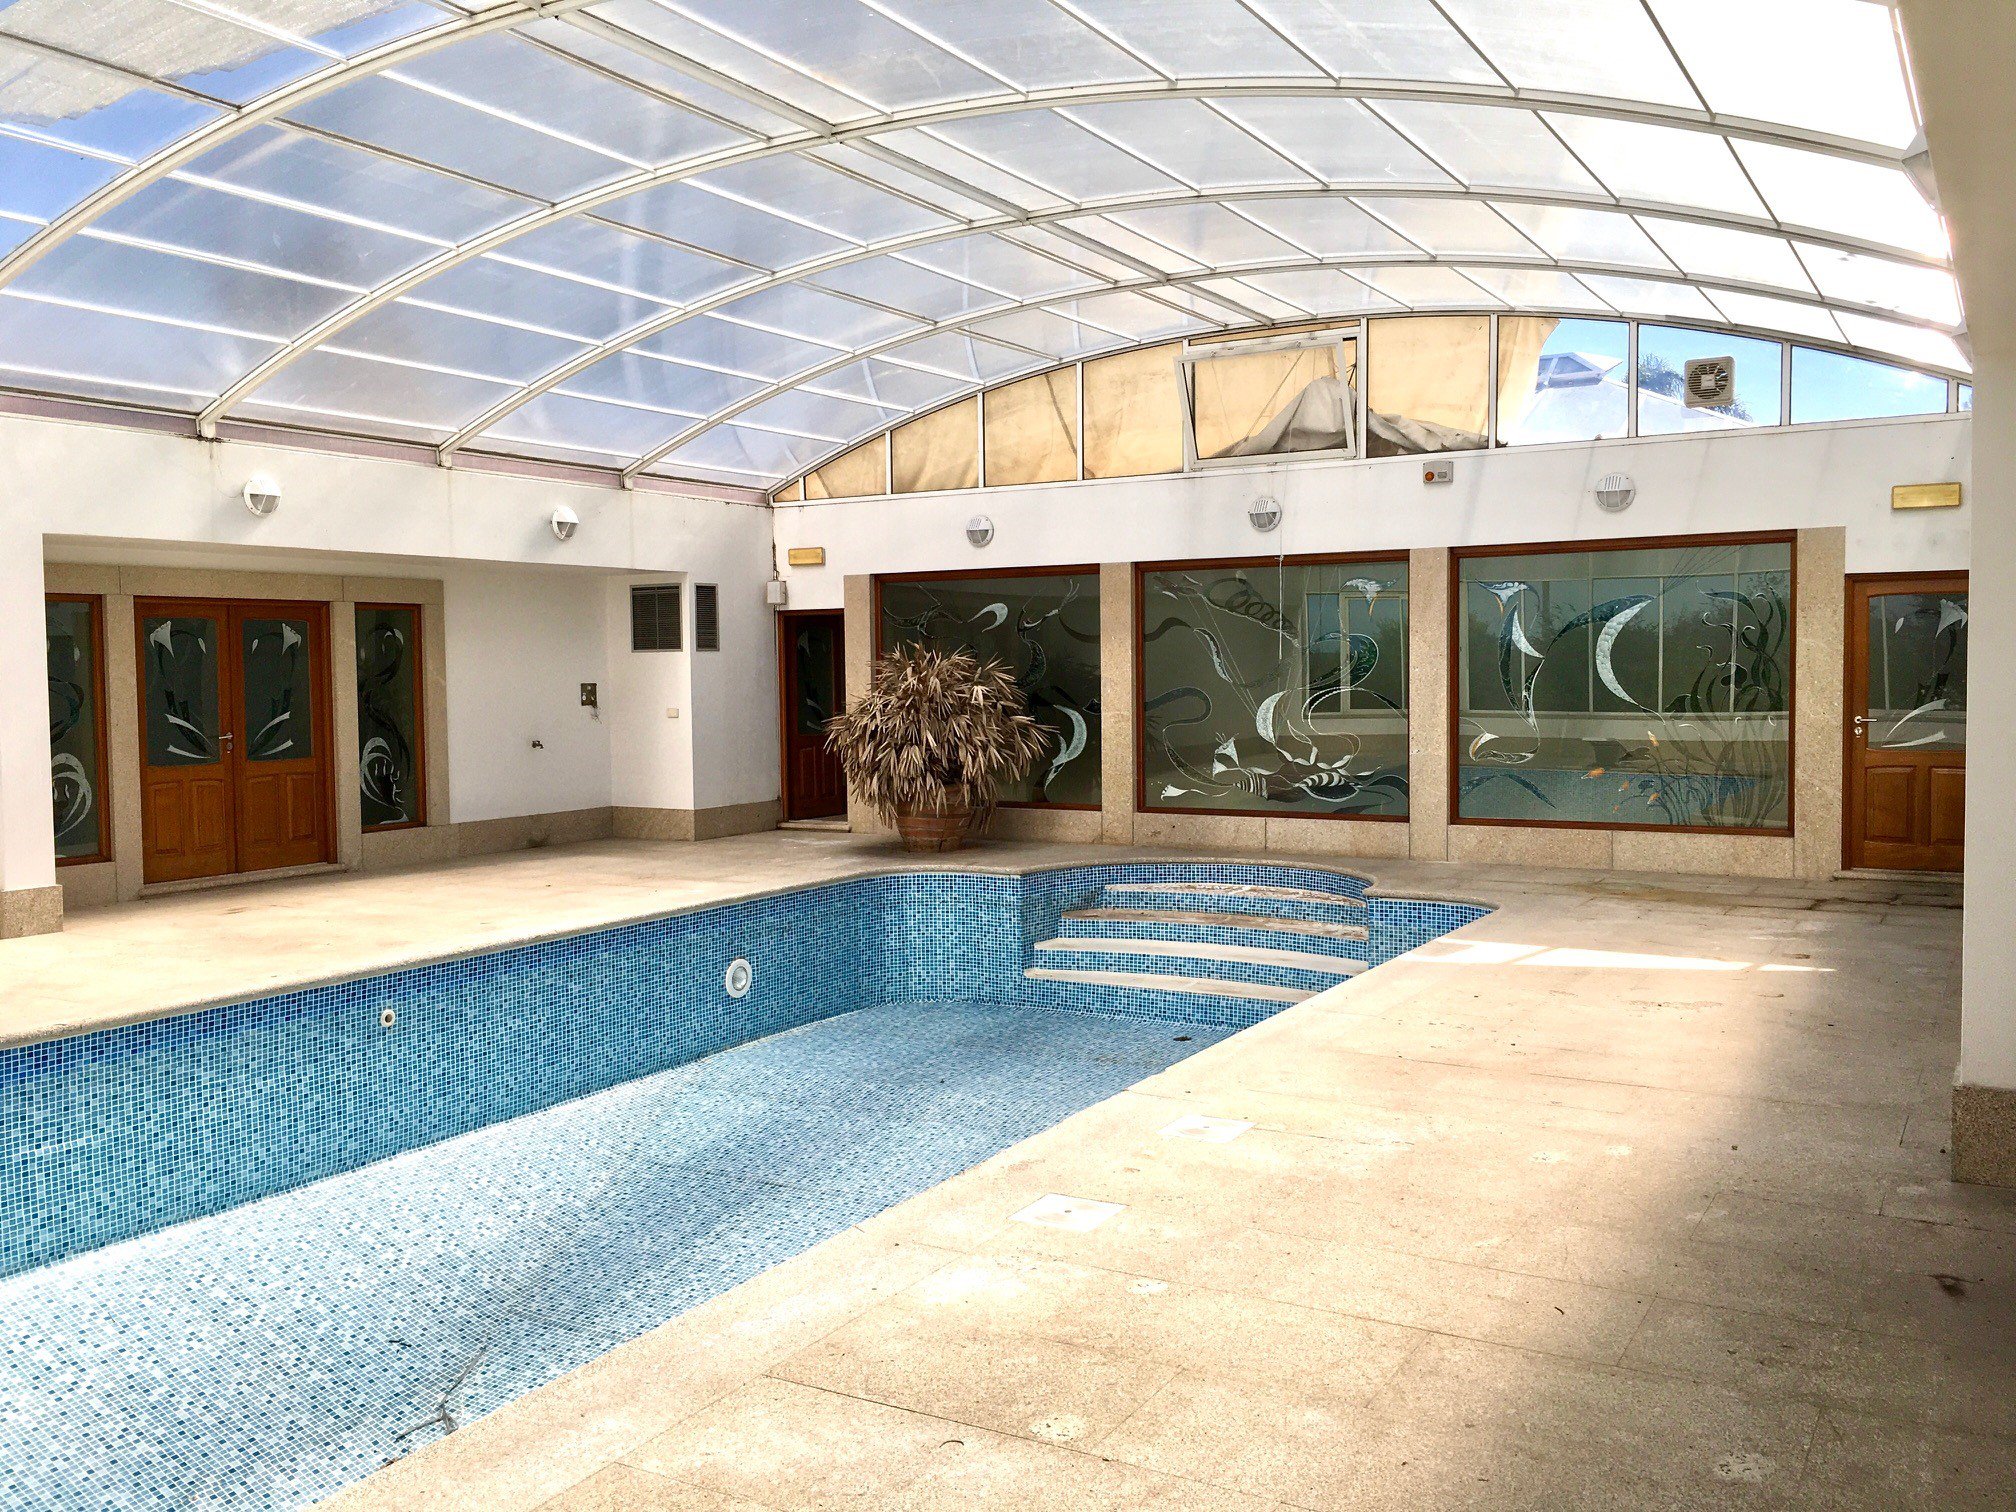 Foto 3 Moradia V5, jardim e piscina interiores